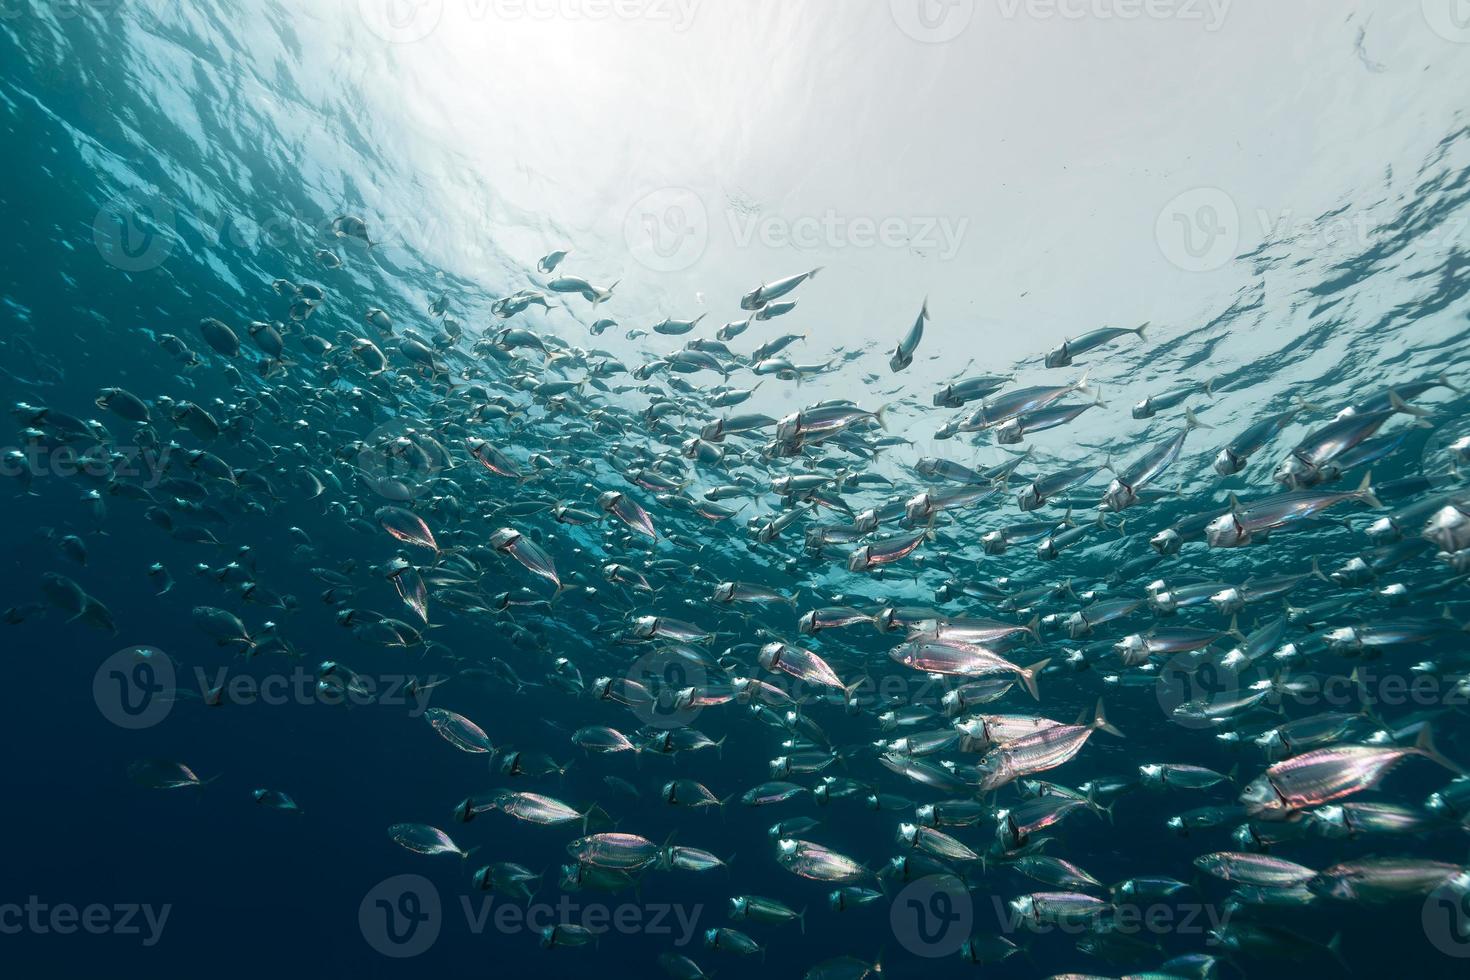 gestreifte Makrele im Roten Meer. foto